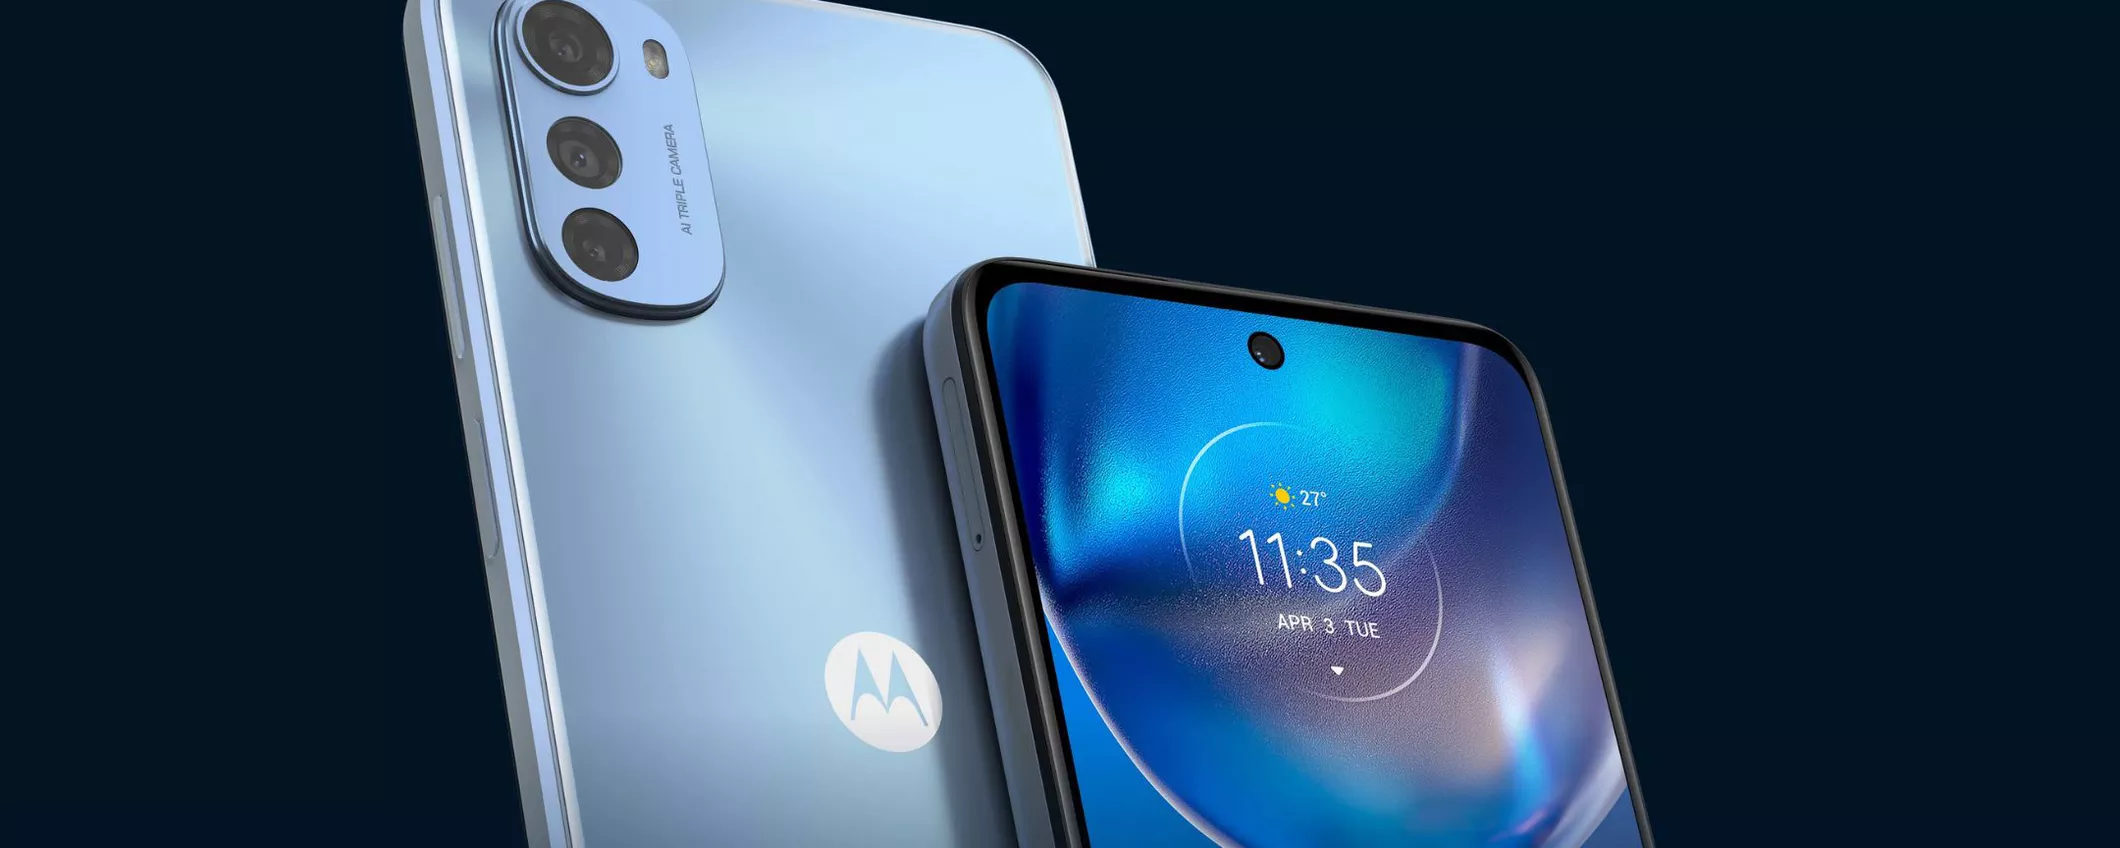 Il LOW COST definitivo di Motorola è tuo ad APPENA 95€: -47% su Amazon